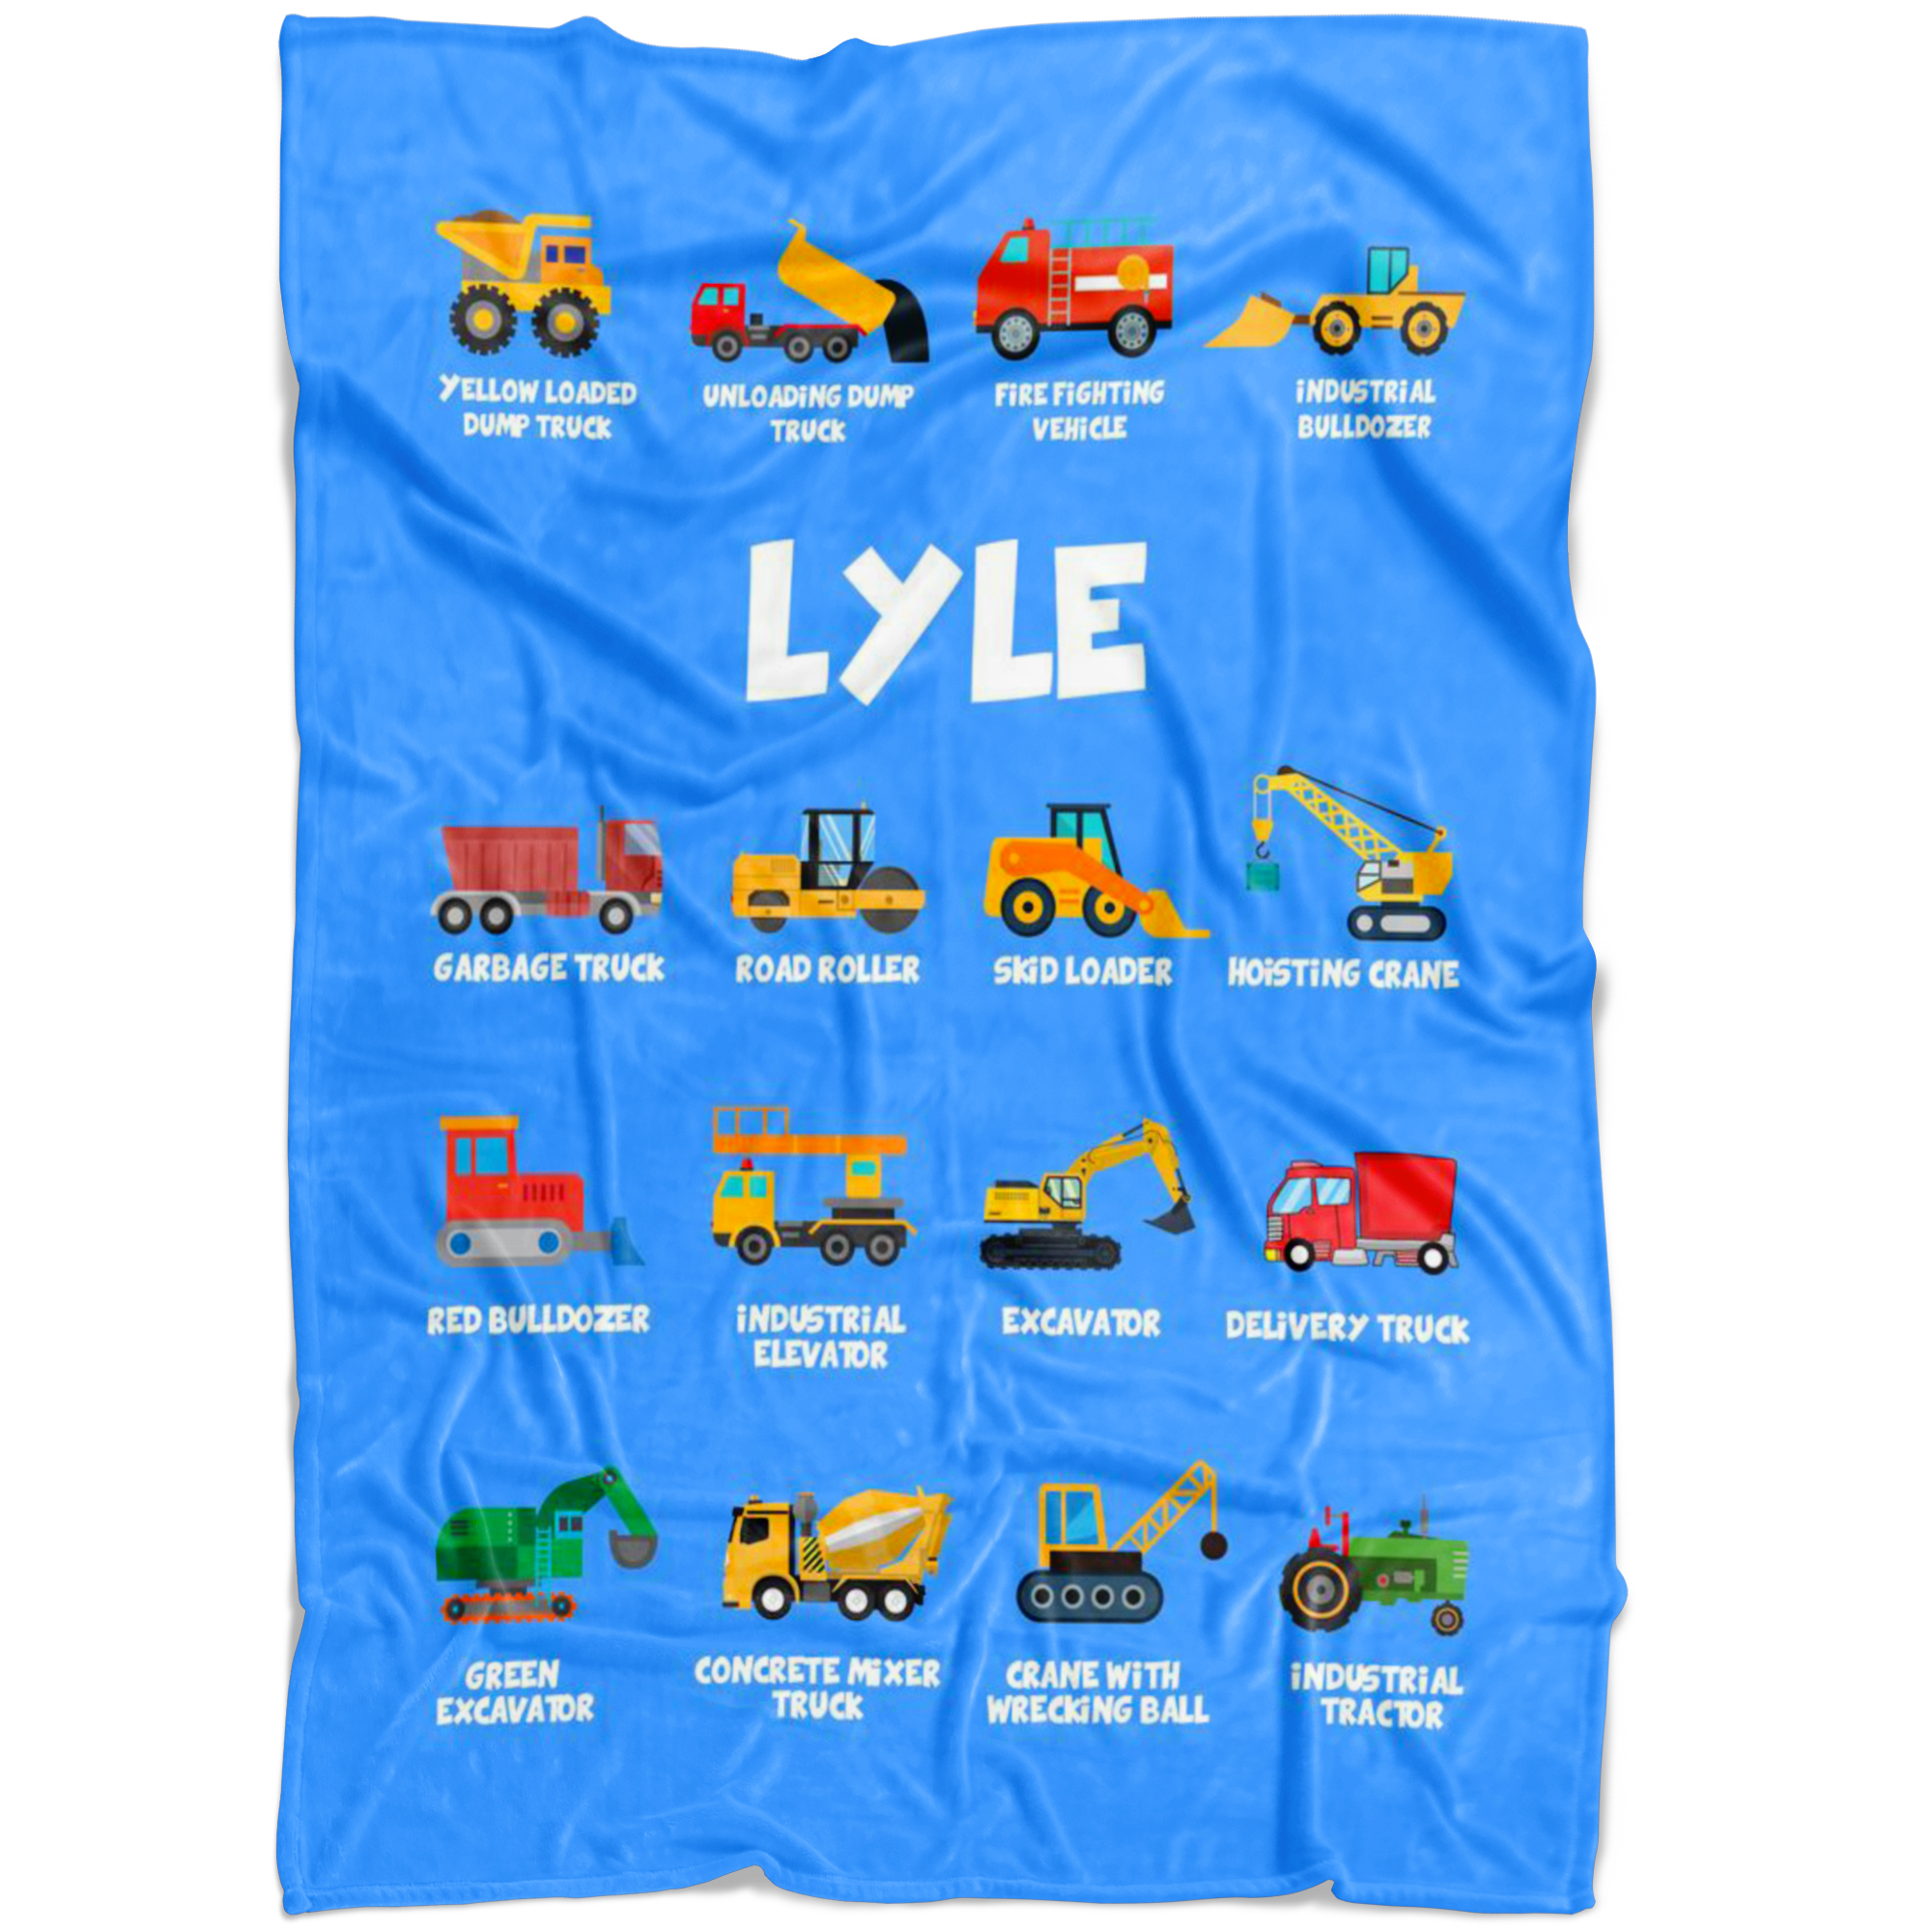 Lyle Construction Blanket Blue